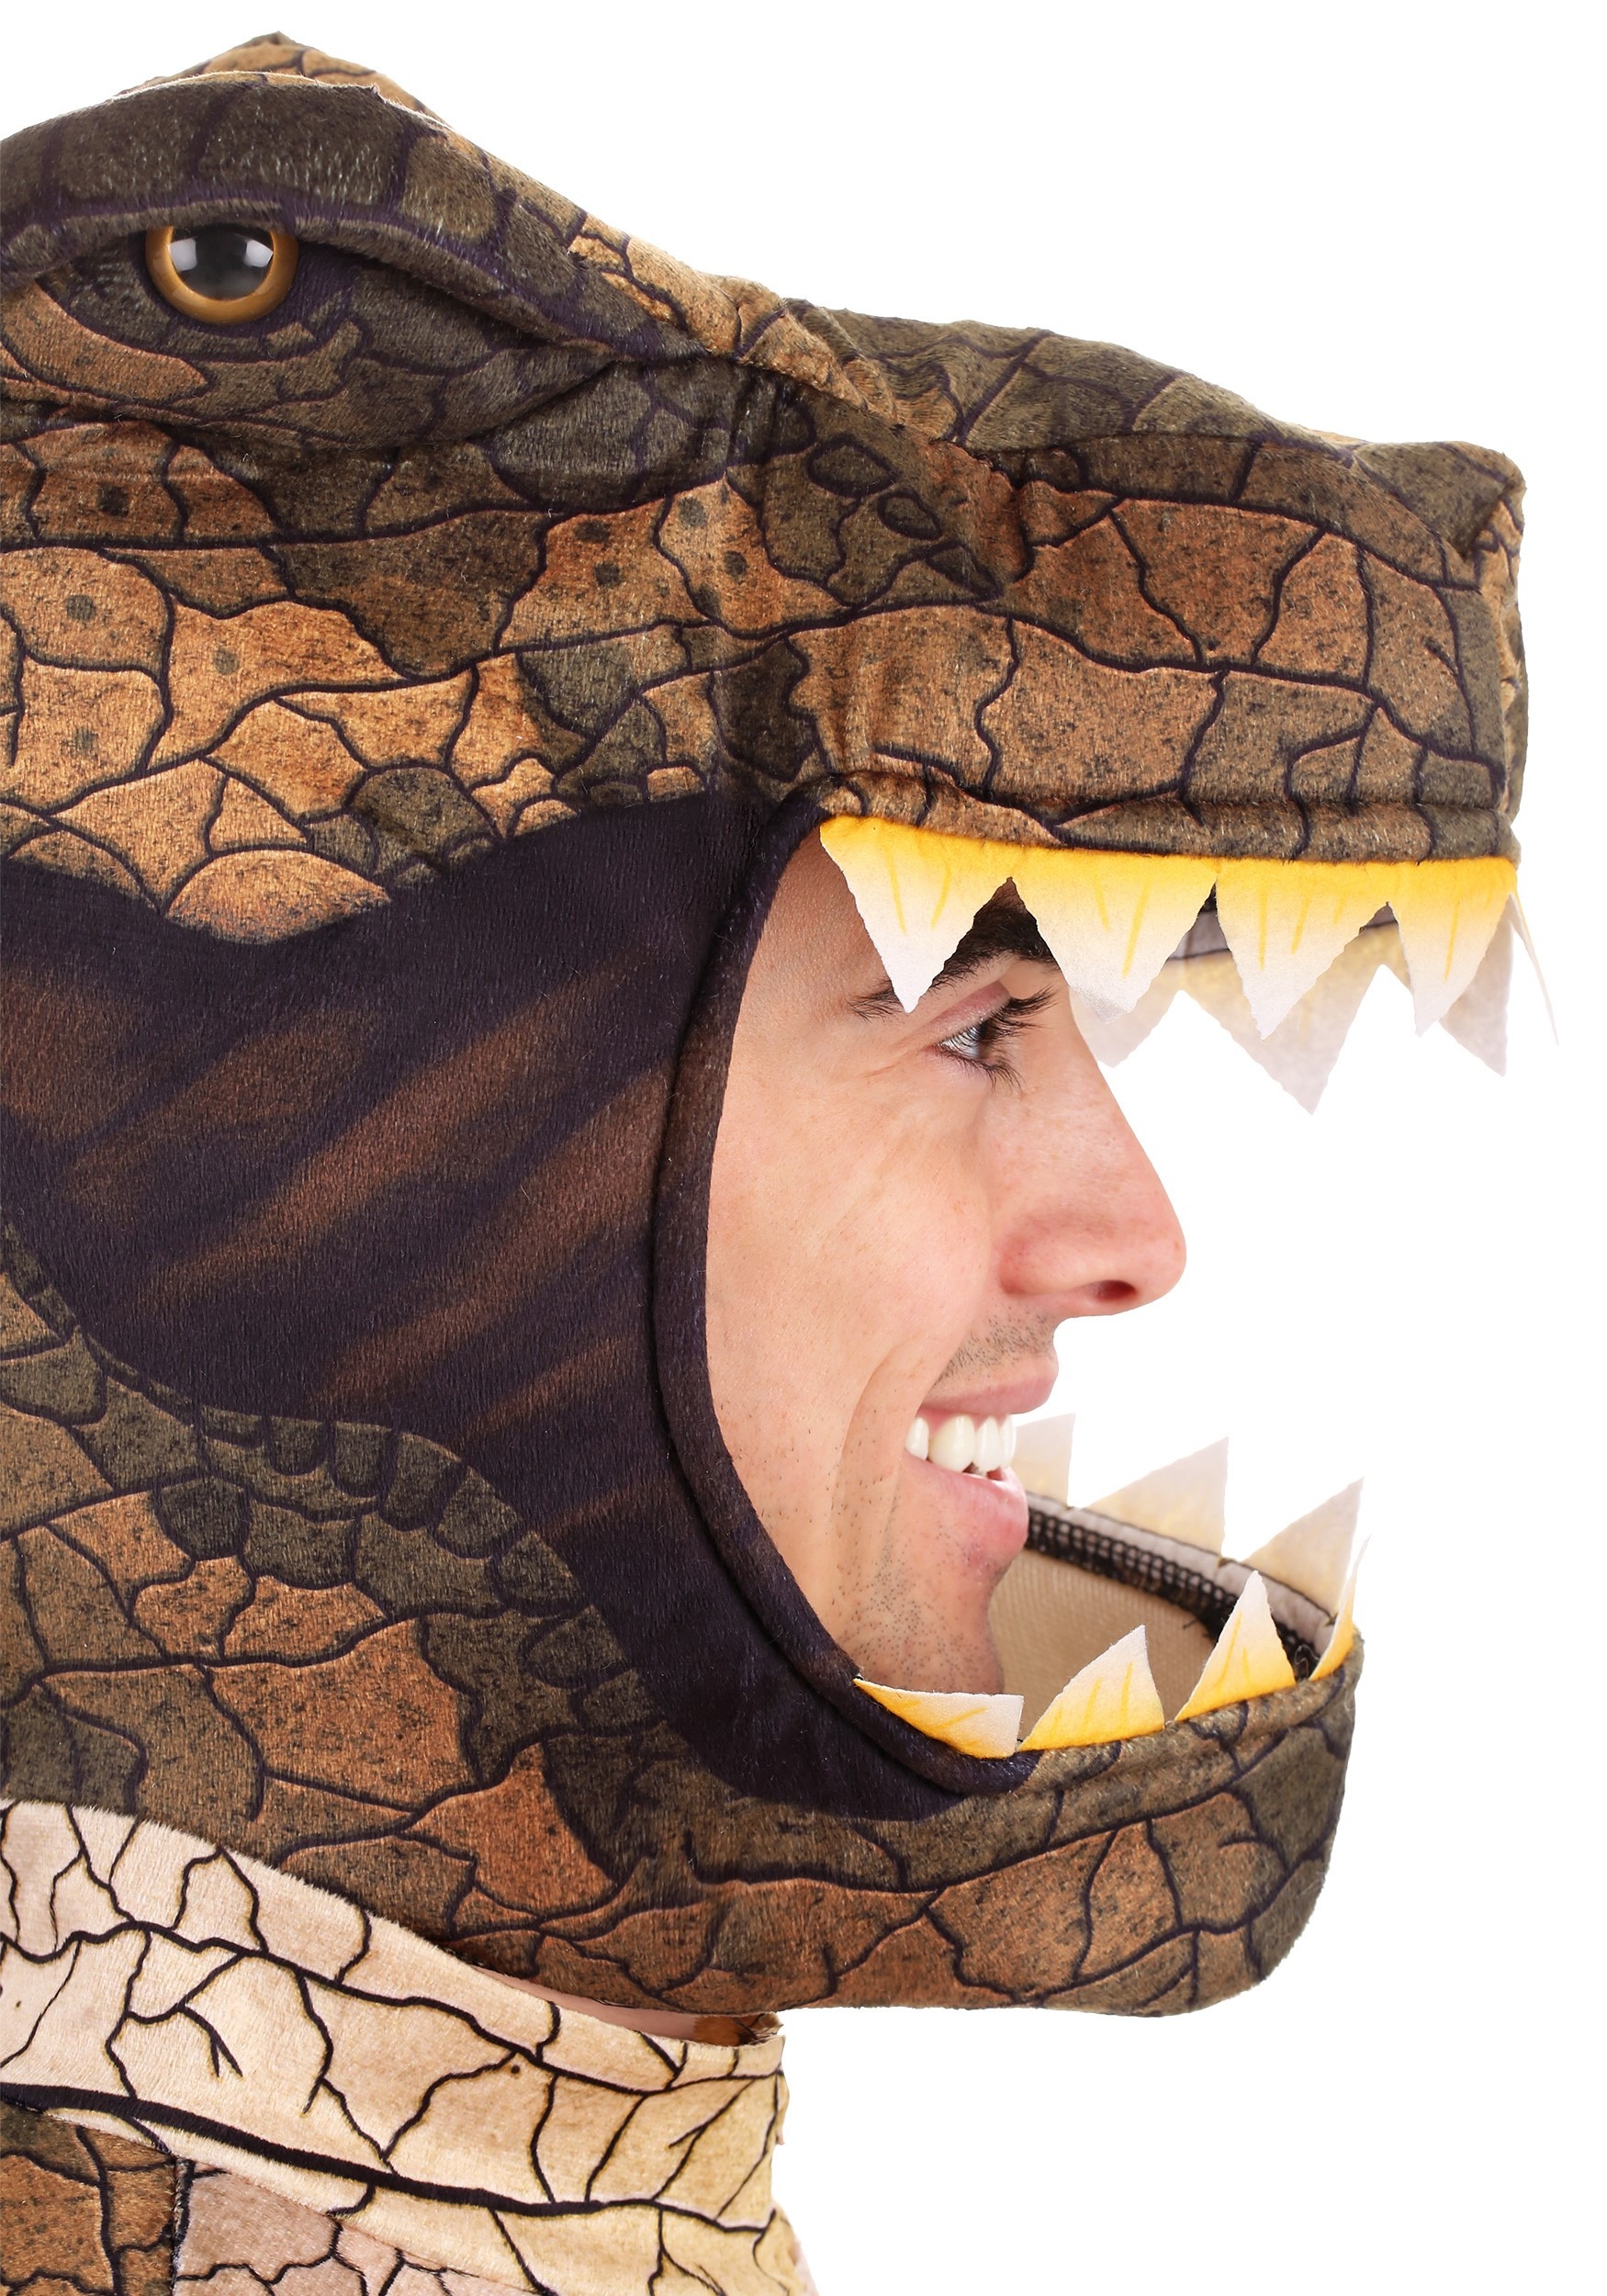 Prehistoric T-Rex Dinosaur Costume For Men